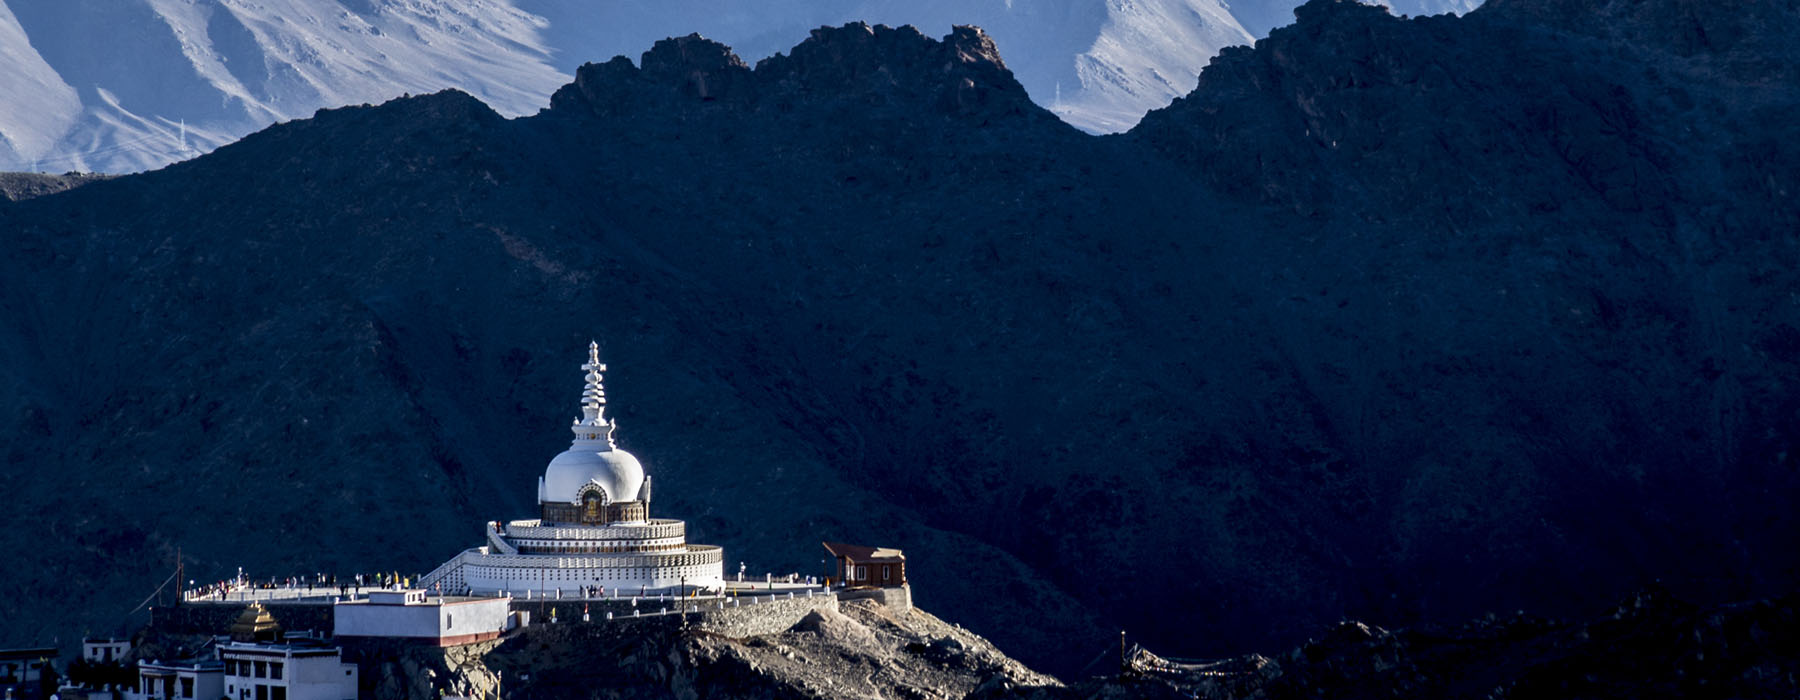 Ladakh<br class="hidden-md hidden-lg" /> Holidays